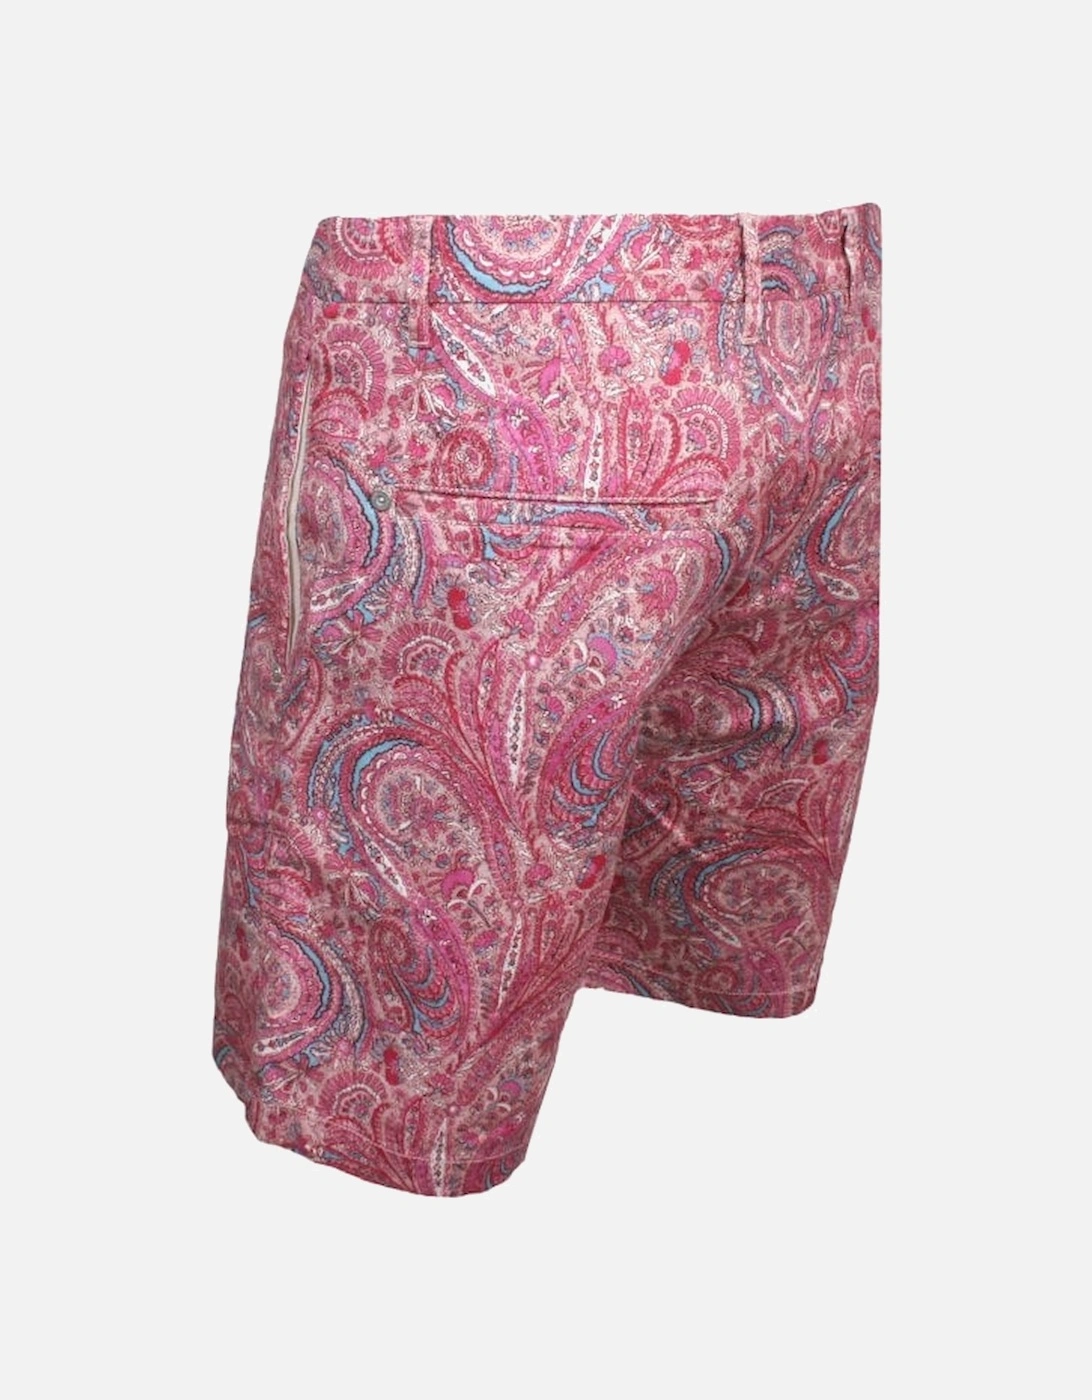 Paisley Print Chino Shorts, Pink